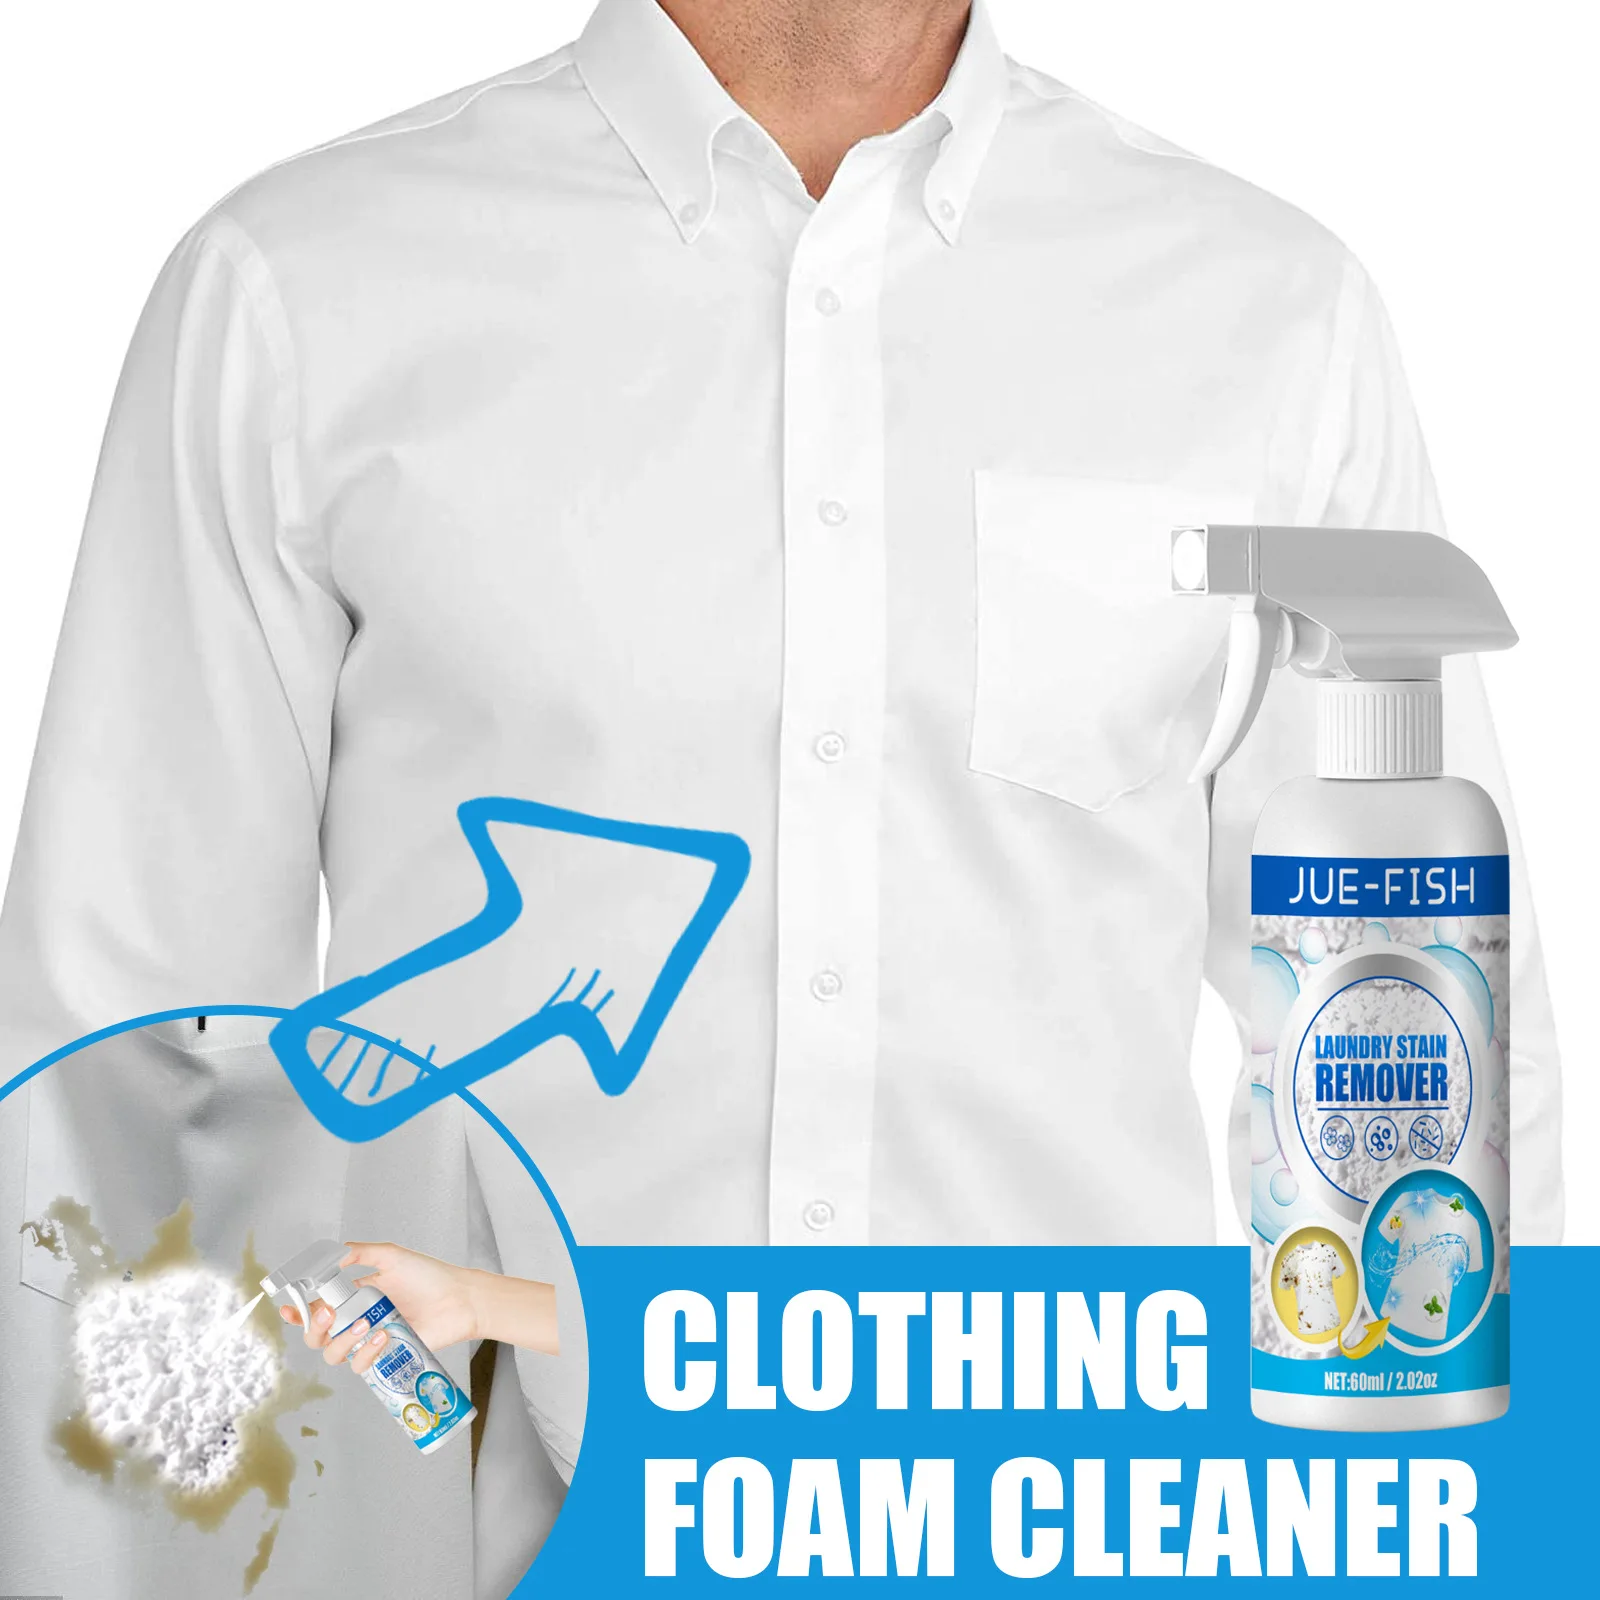 

60 мл пенопластовый очиститель, очиститель одежды, пуховая куртка, чистящие принадлежности для мытья штор, Ковров, Бесплатный матрас для сухой уборки